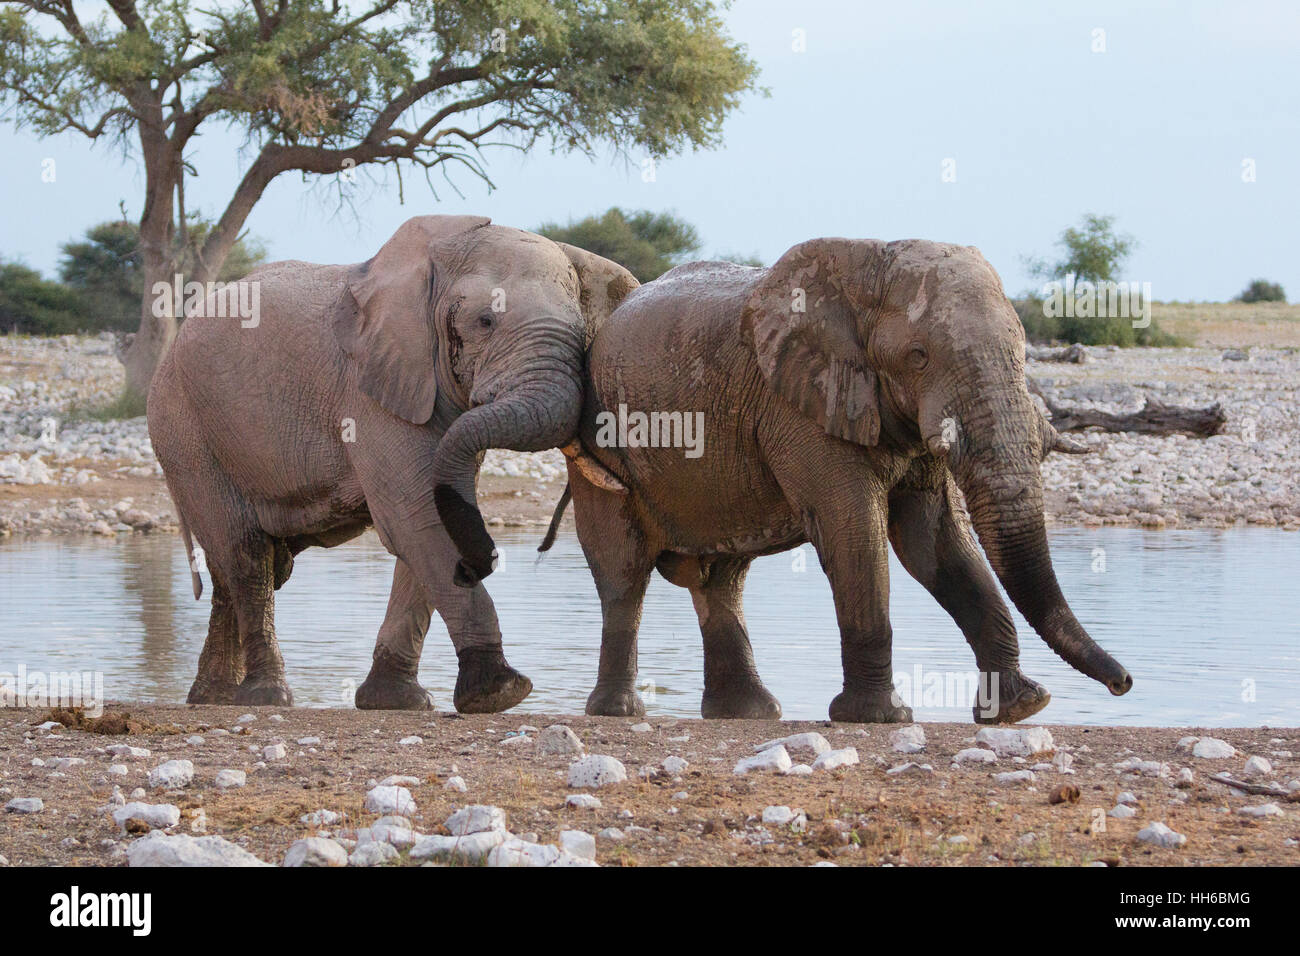 Parc National d'Etosha, Namibie. Deux éléphants (Loxodonta africana) s'affrontent dans un trou d'eau. Banque D'Images